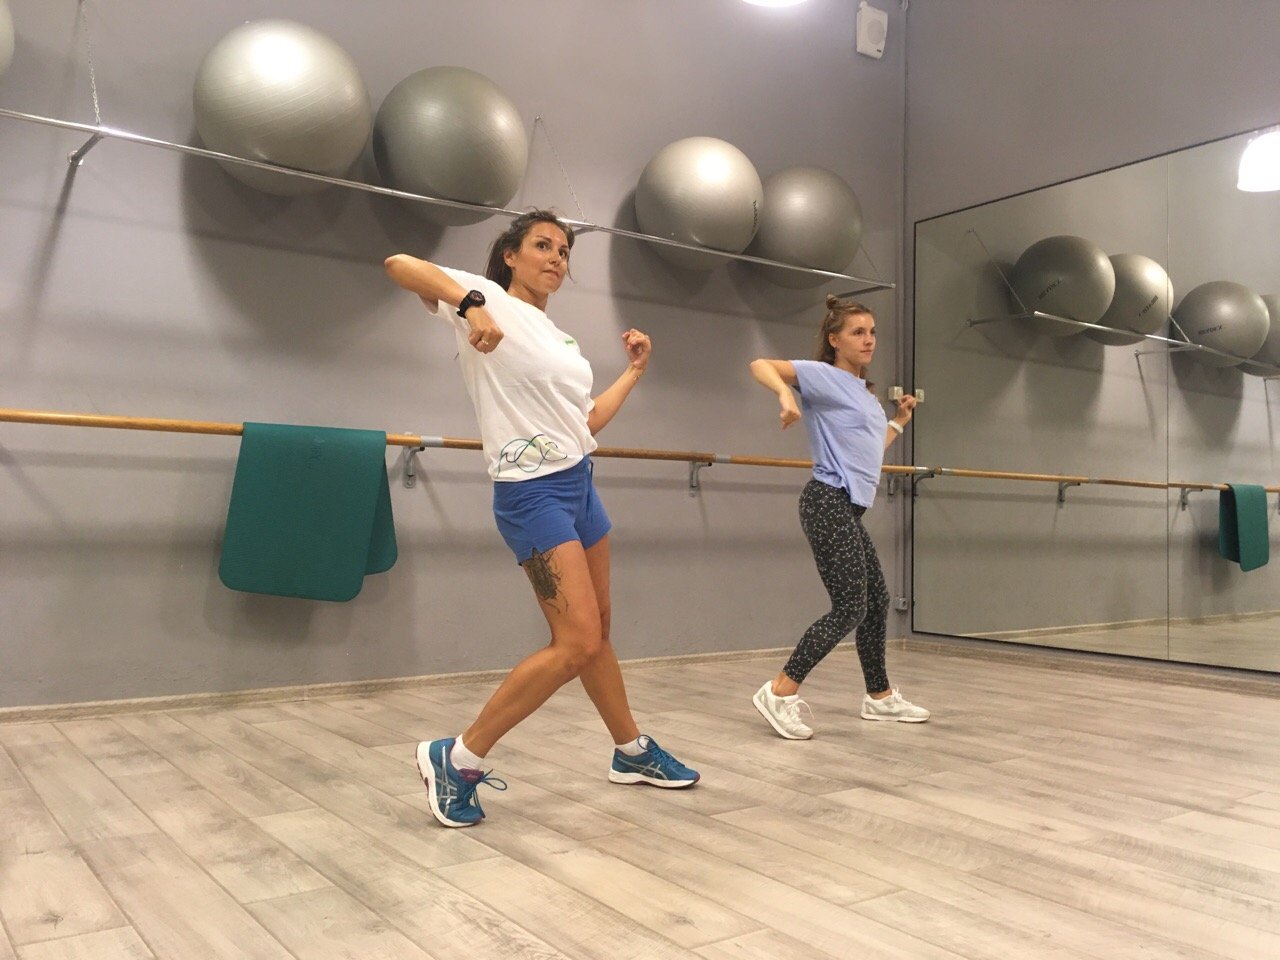 Ladies Dance & Mind, студия танцев и фитнеса, улица Обручева, 23 к3, цокольный этаж